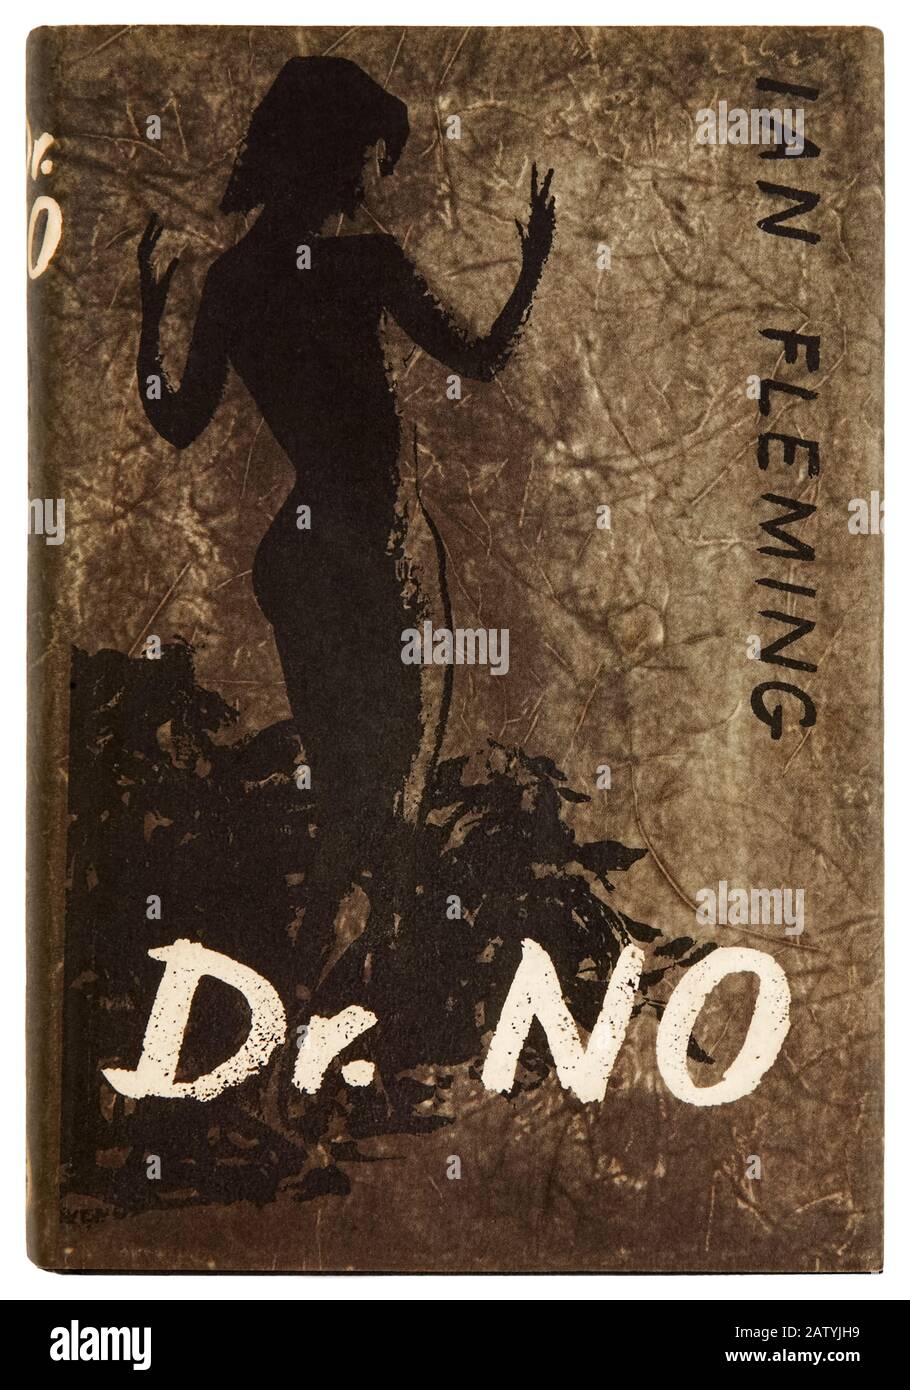 Dr. No von Ian Fleming (1908 - 1964) der sechste Roman mit dem britischen Geheimdienstagenten 007, James Bond und dem ersten, der 1962 für die große Leinwand adaptiert wurde. Foto von 1958 Erstausgabe Frontcover mit Kunstwerken von Pat Marriott (1920-2002). Stockfoto